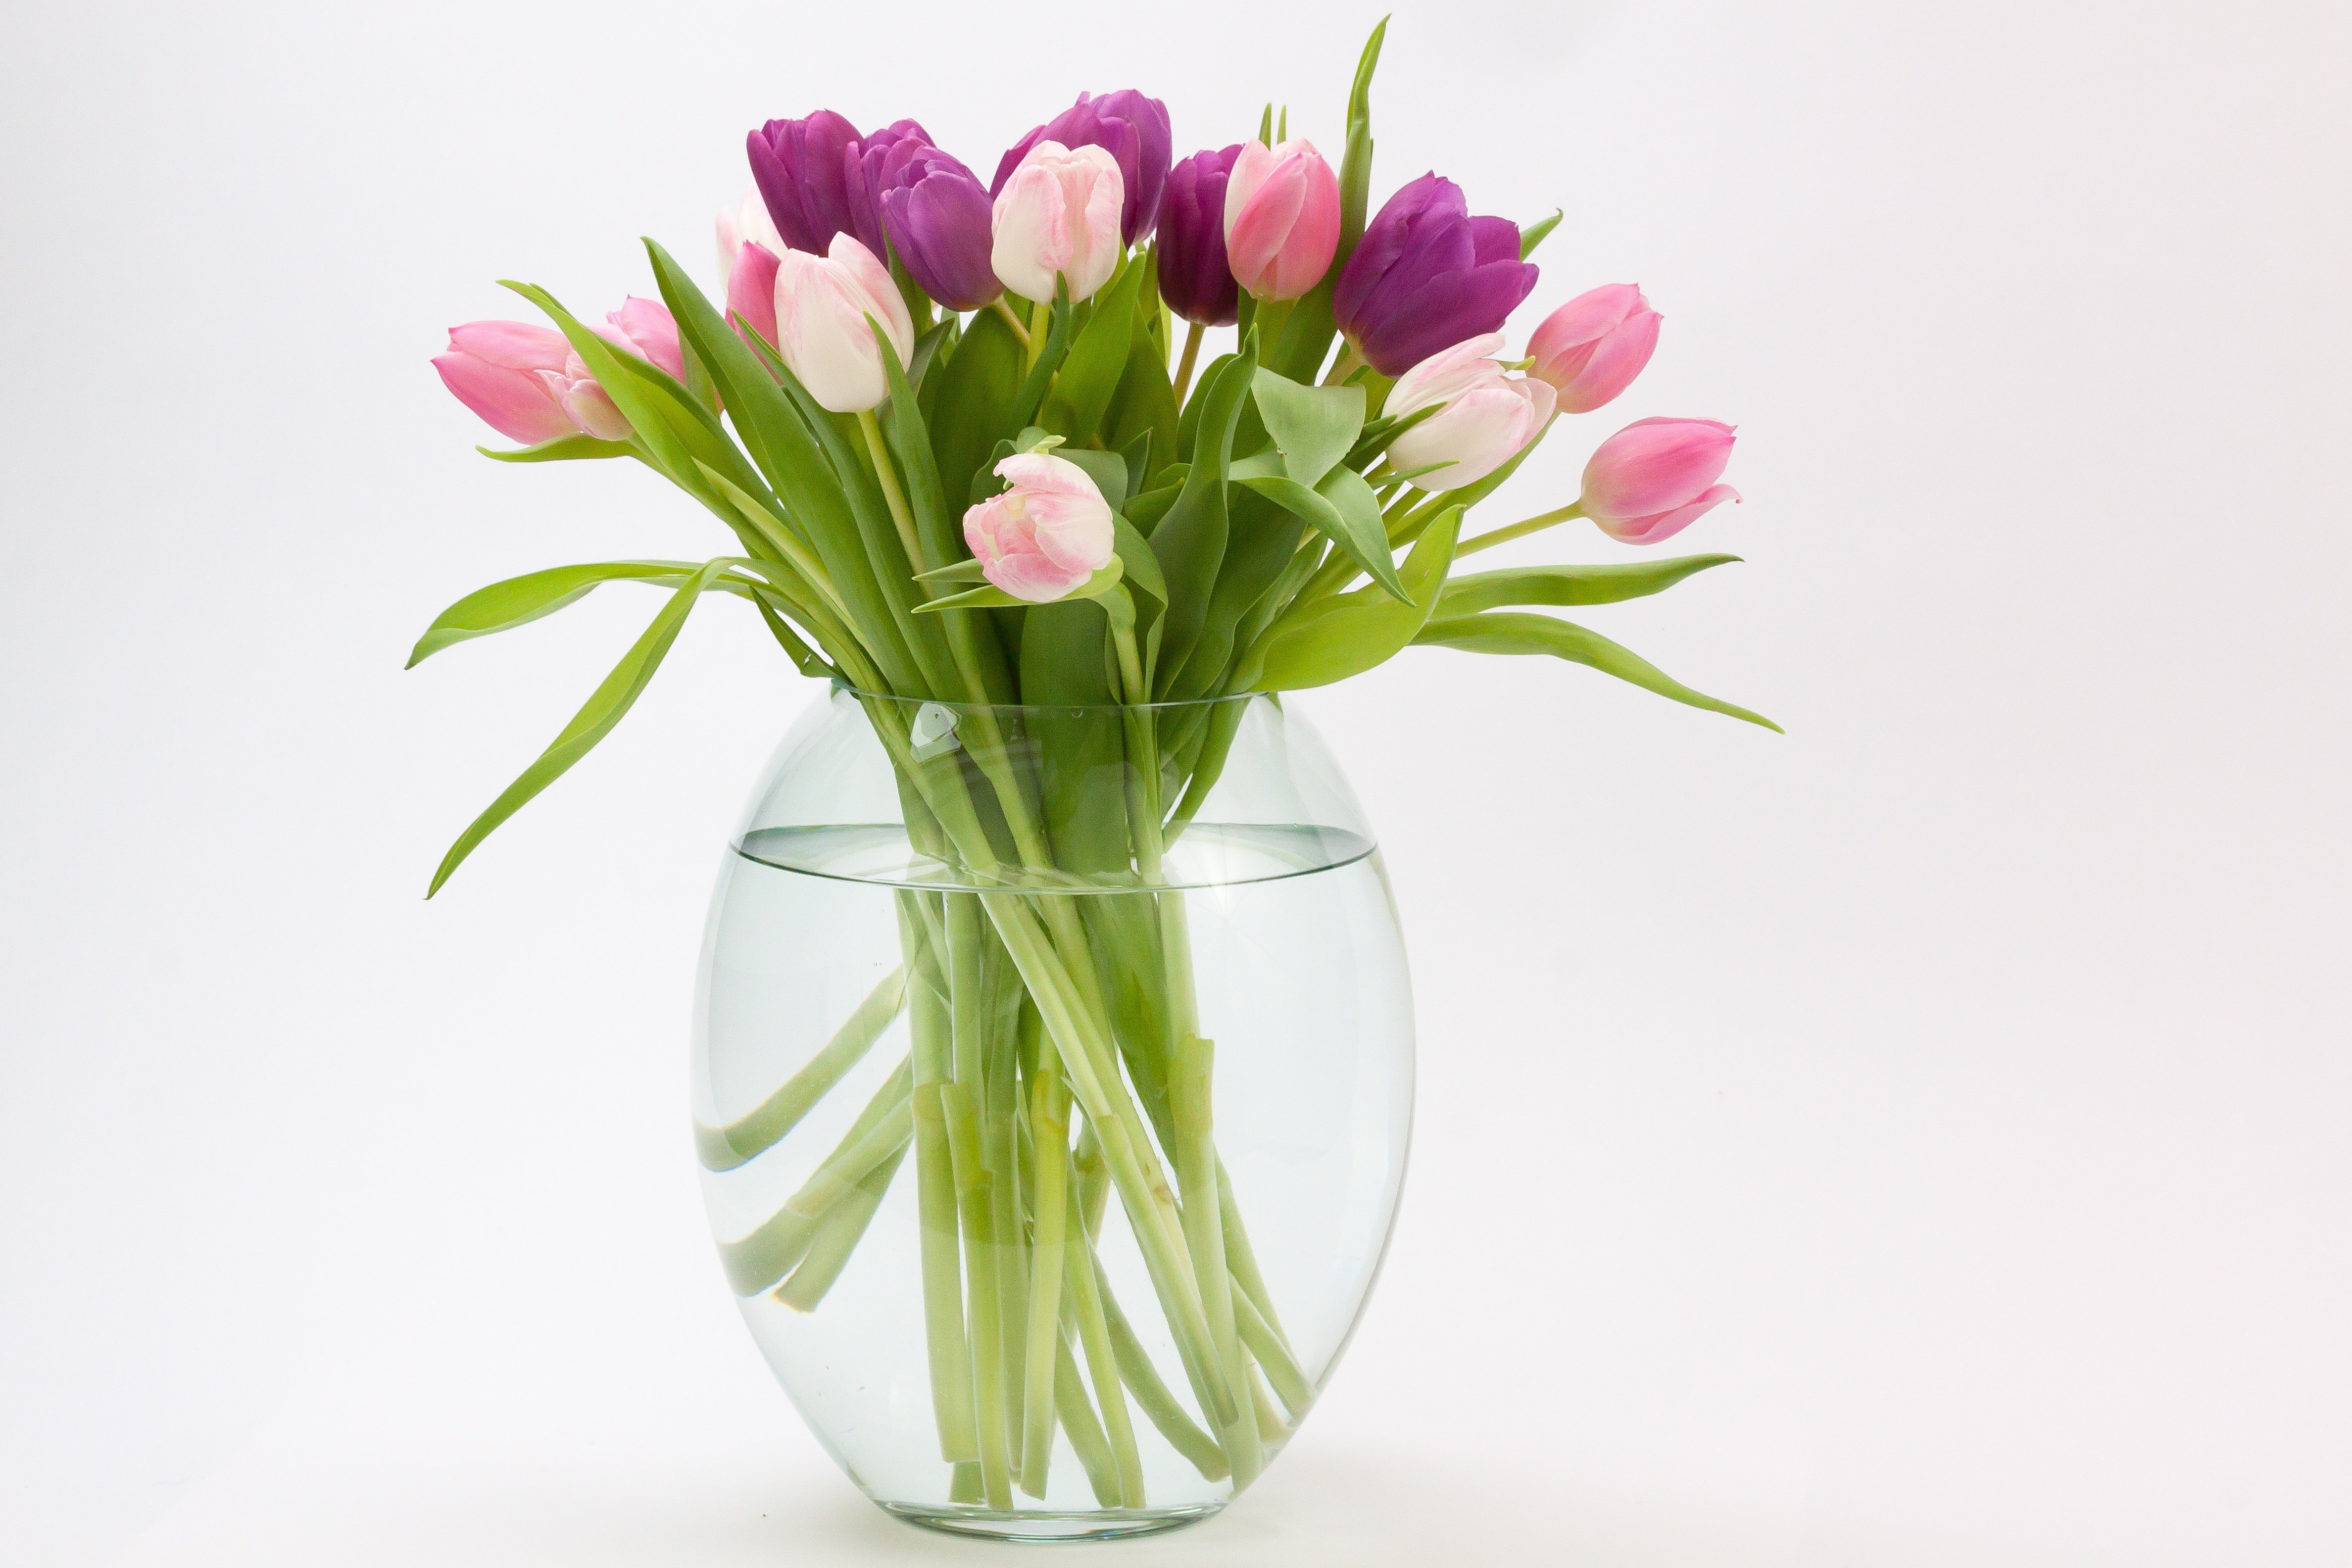 Тюльпаны букет сохранить в воде как дольше. Весенние цветы v vaze. Цветы в прозрачной вазе. Ваза с тюльпанами. Красивый букет в вазе.